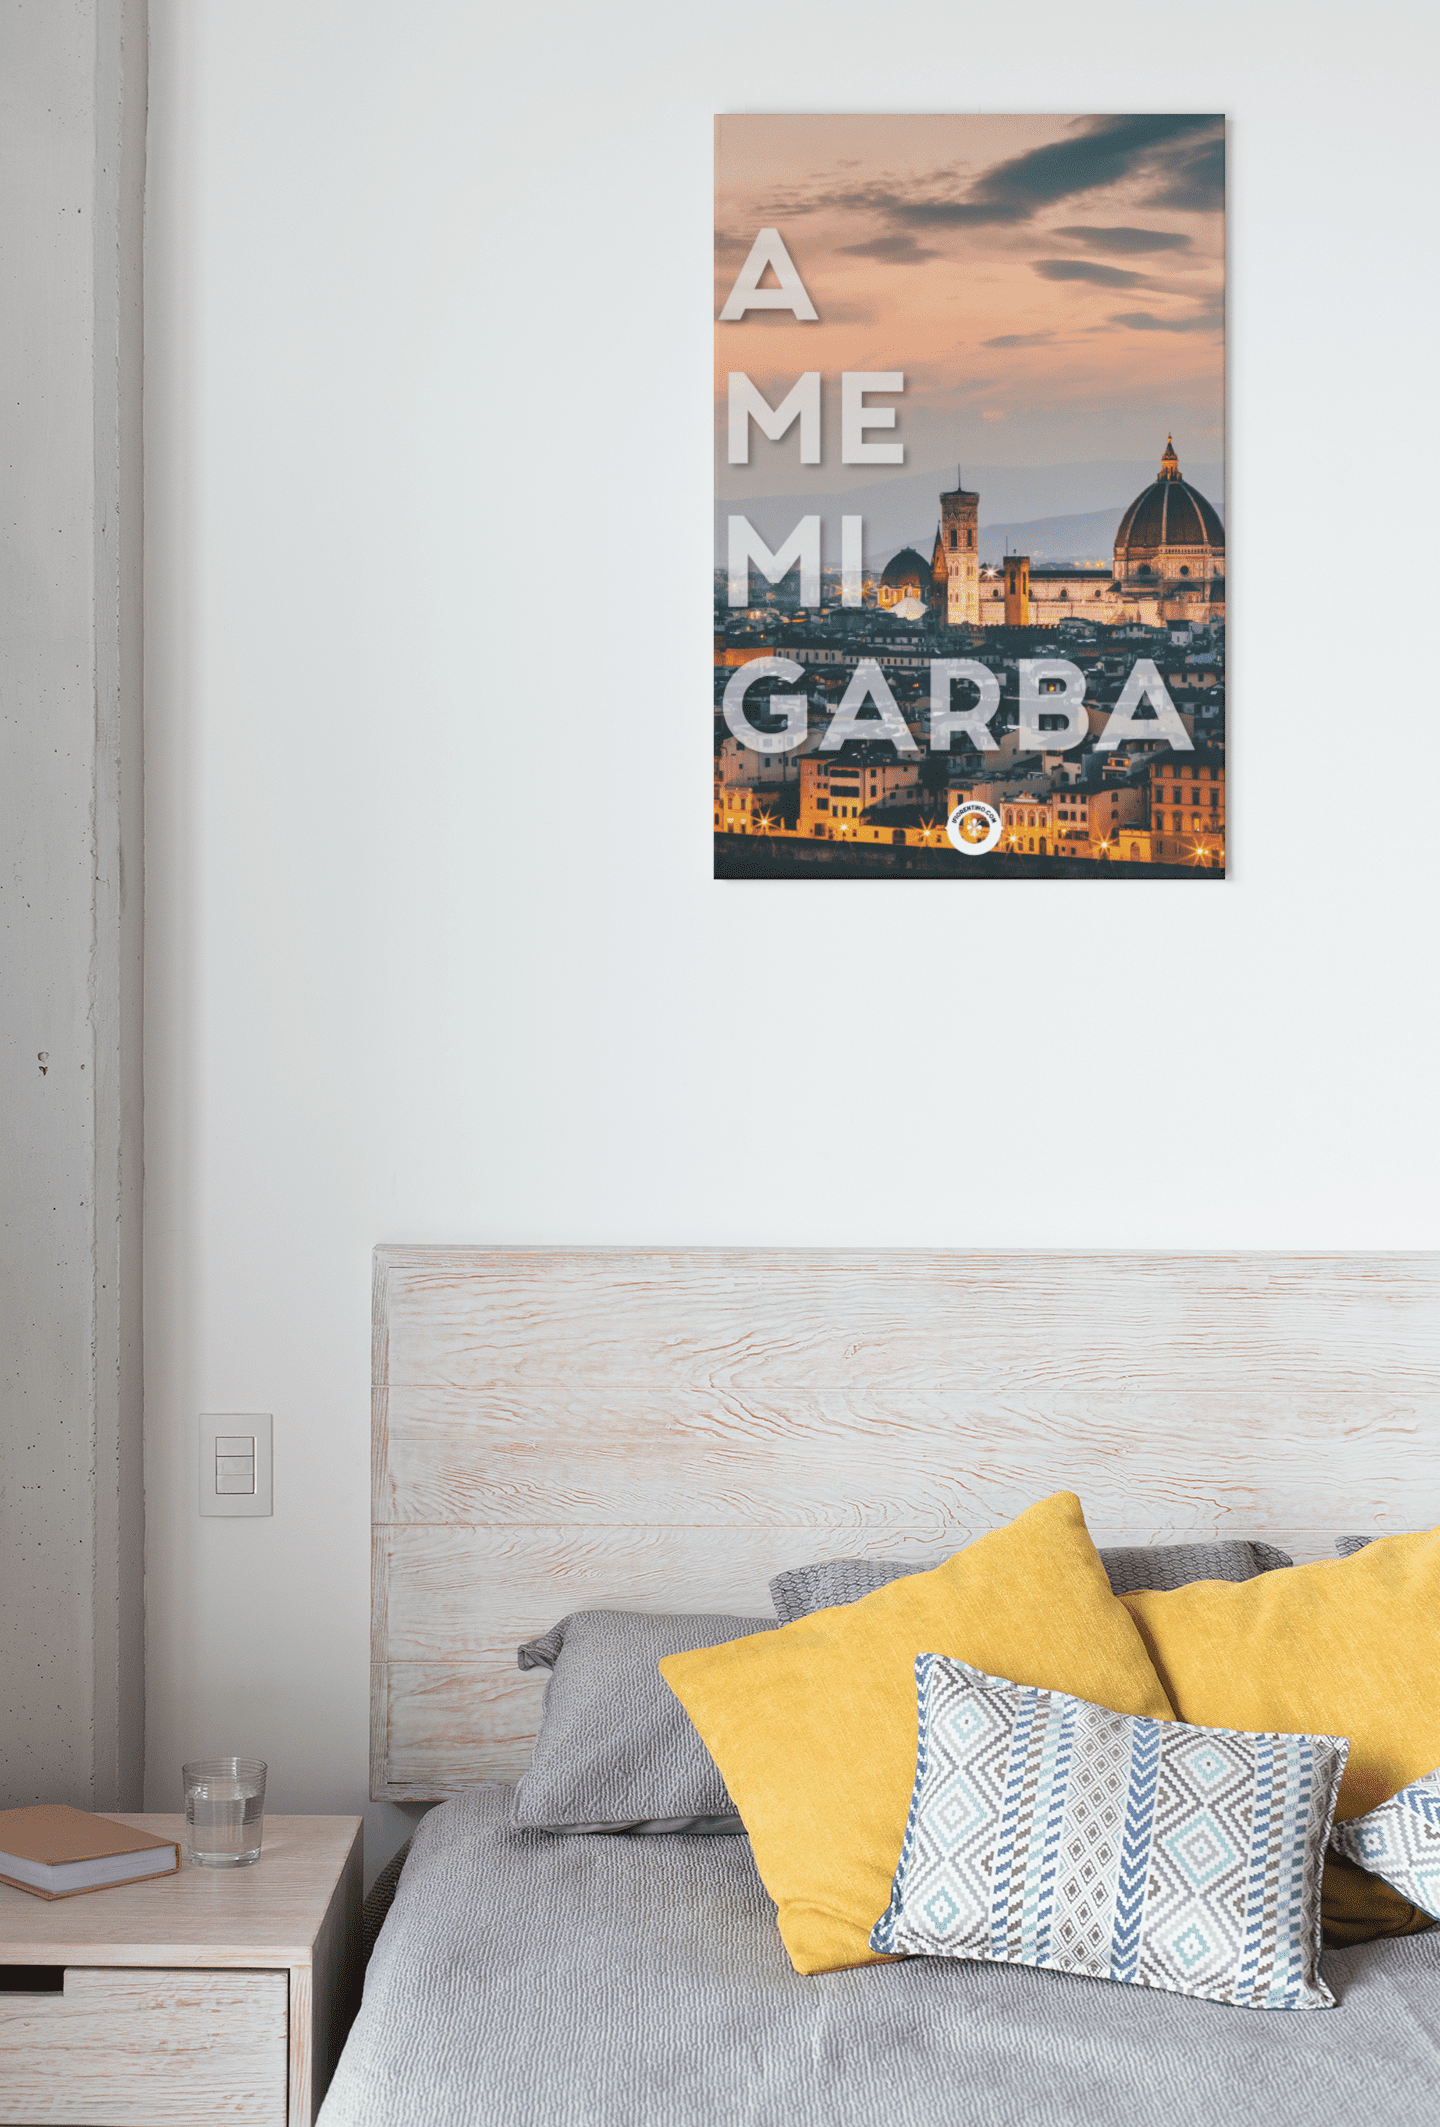 A ME MI GARBA - poster fiorentini - poster firenze - regalo fiorentino - fiorentino  - foppeddittelo